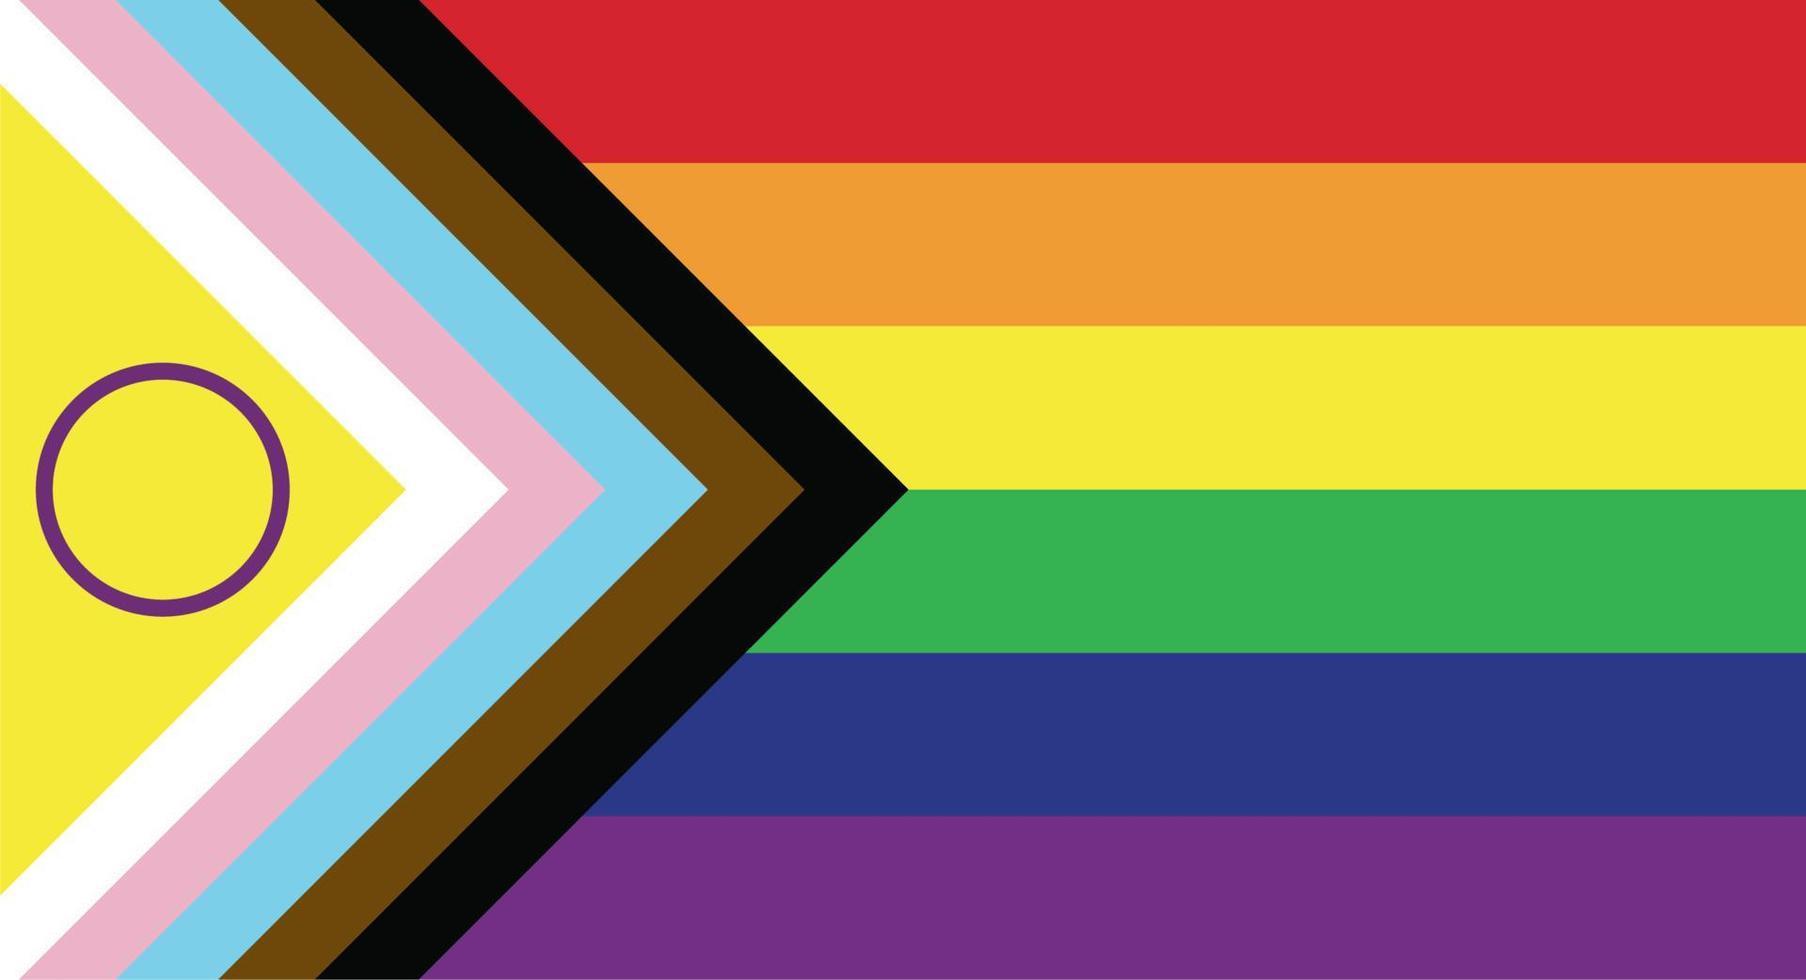 nouveau vecteur de drapeau de fierté lgbtq mis à jour. drapeau de fierté de progrès inclusif intersexe. drapeau de bannière pour lgbt, ou fierté lgbtqia.